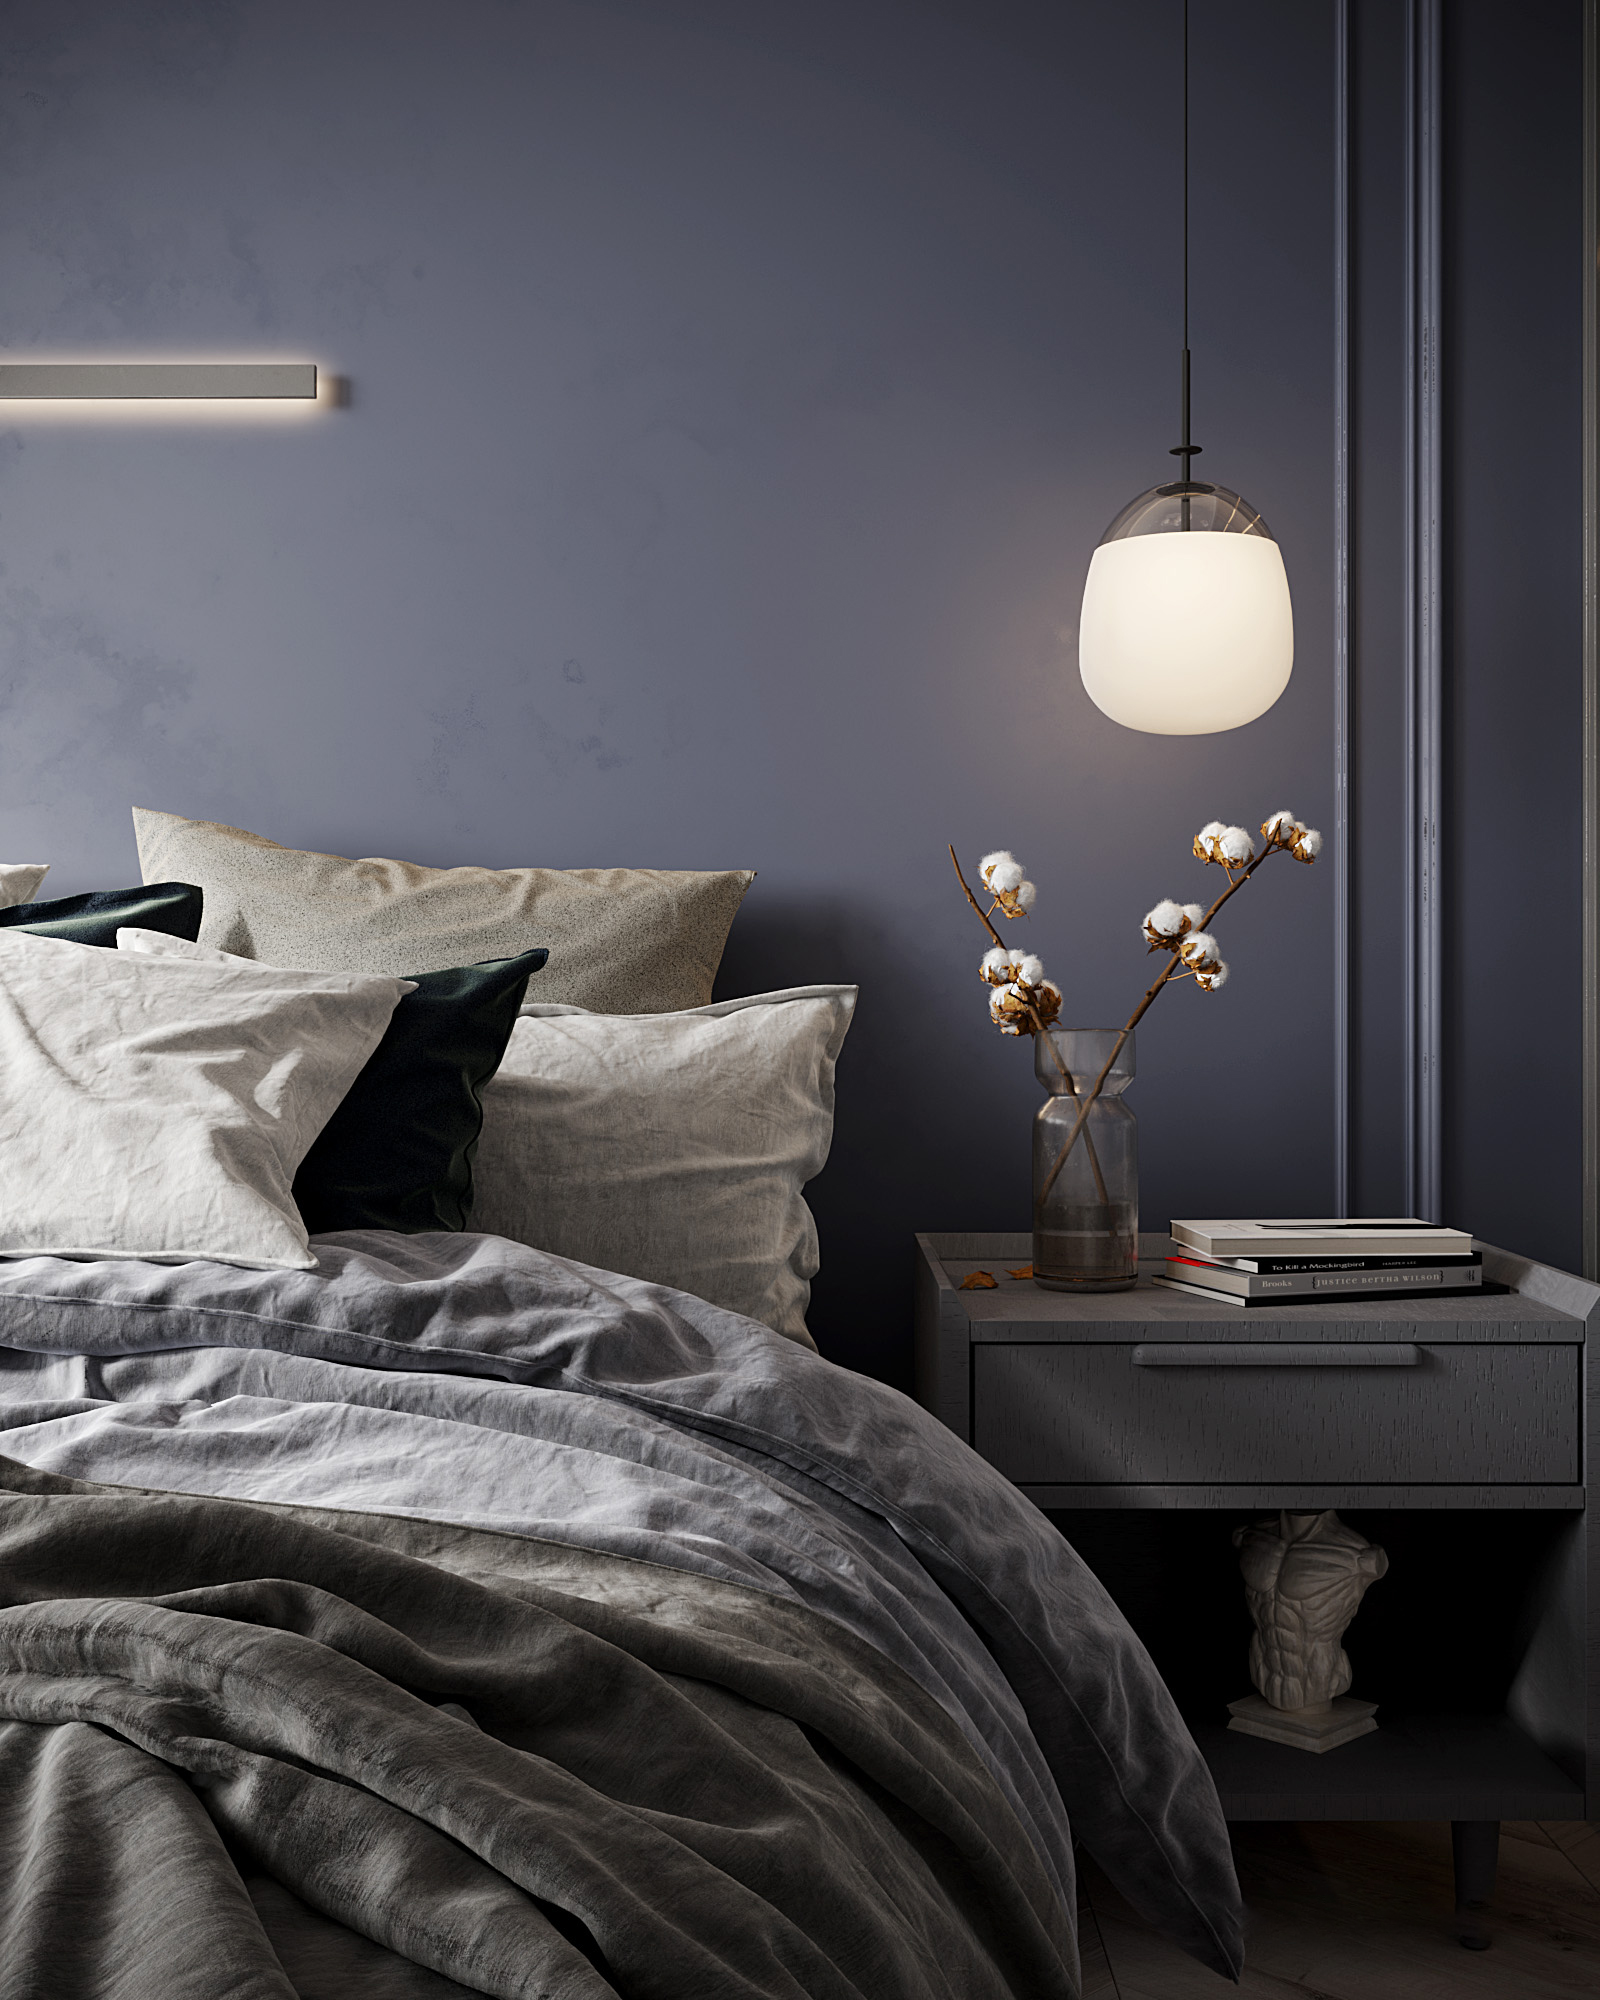 床頭燈具應選擇色溫和同空間一致的燈具，溫馨又有腔調的臥室必然有一盞壁燈或吊燈